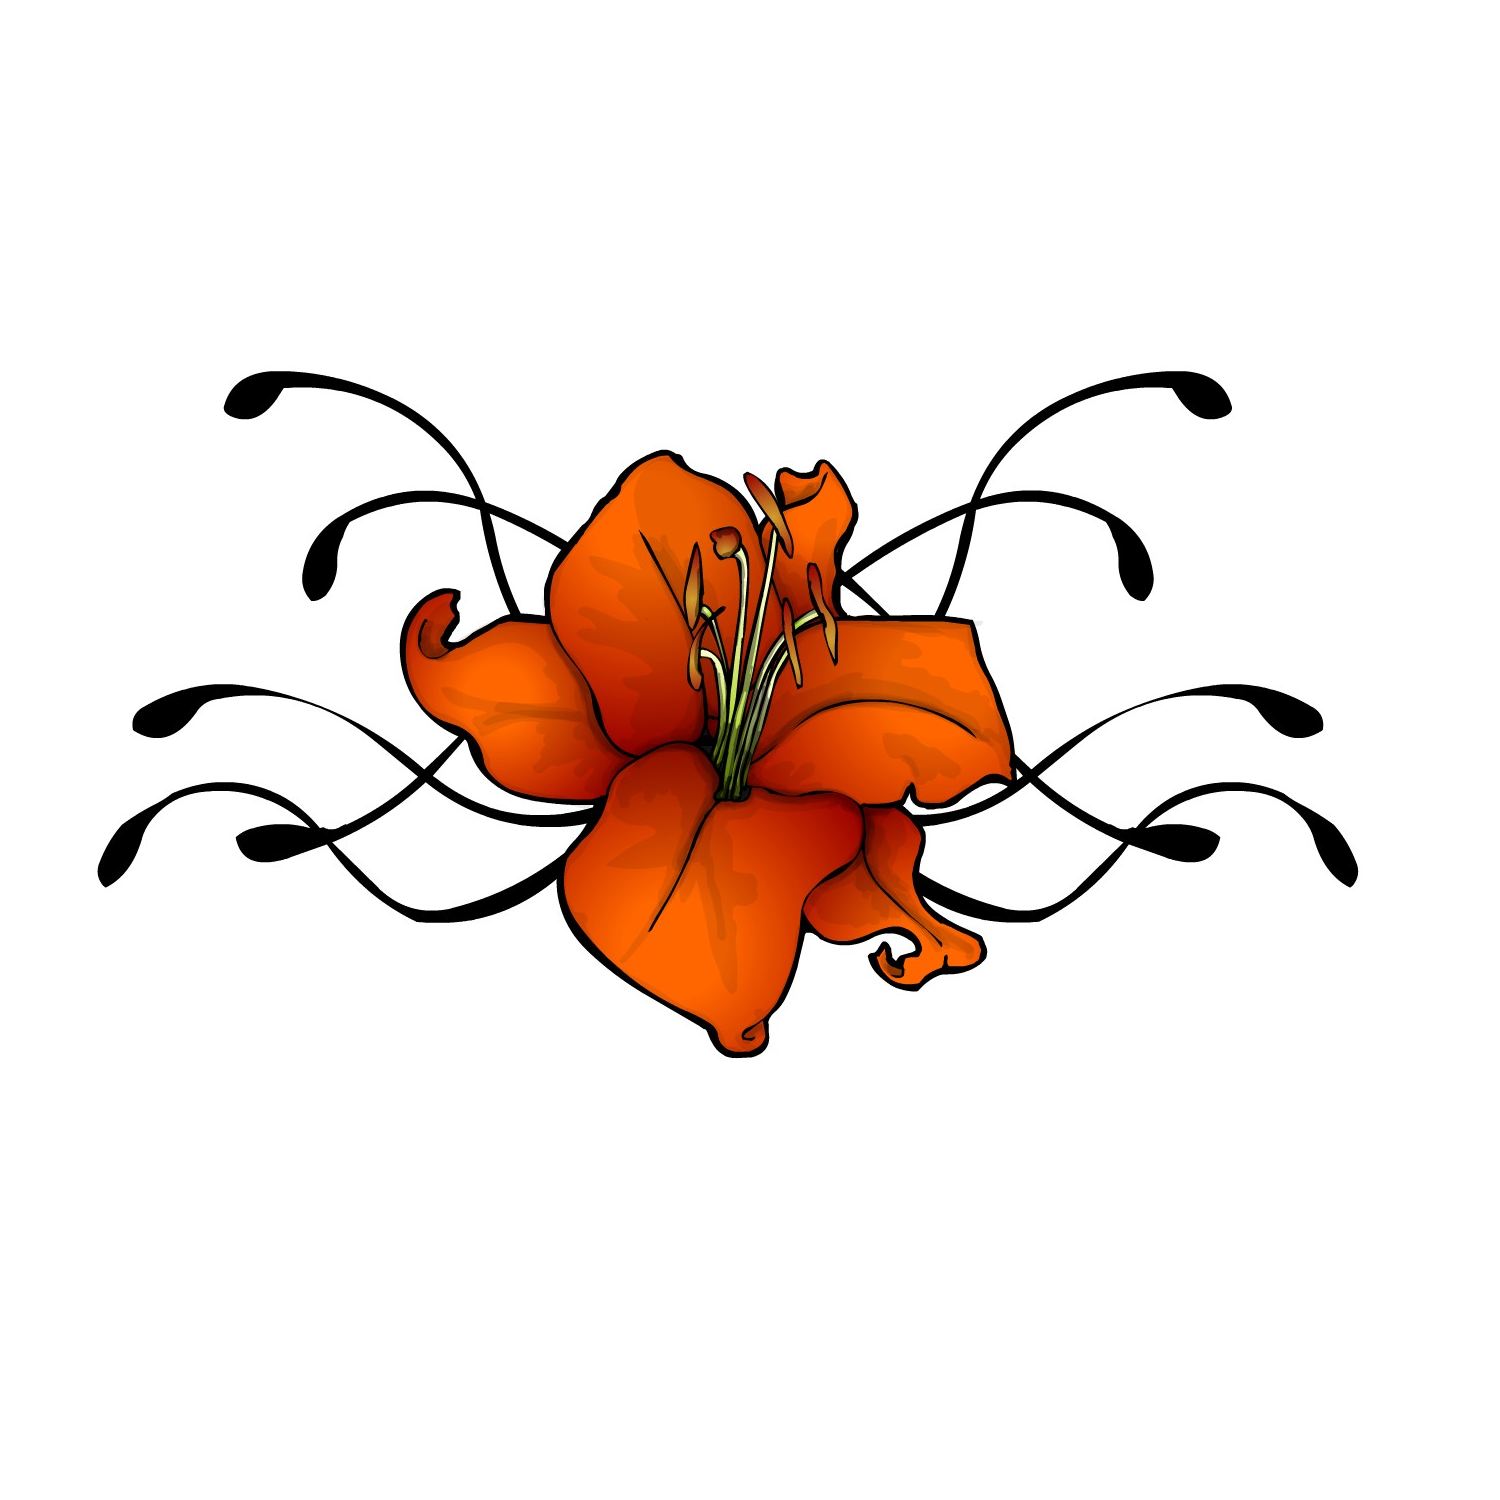 Free Flower Tattoo Designs - Tattoo Ideas Pictures | Tattoo Ideas ...